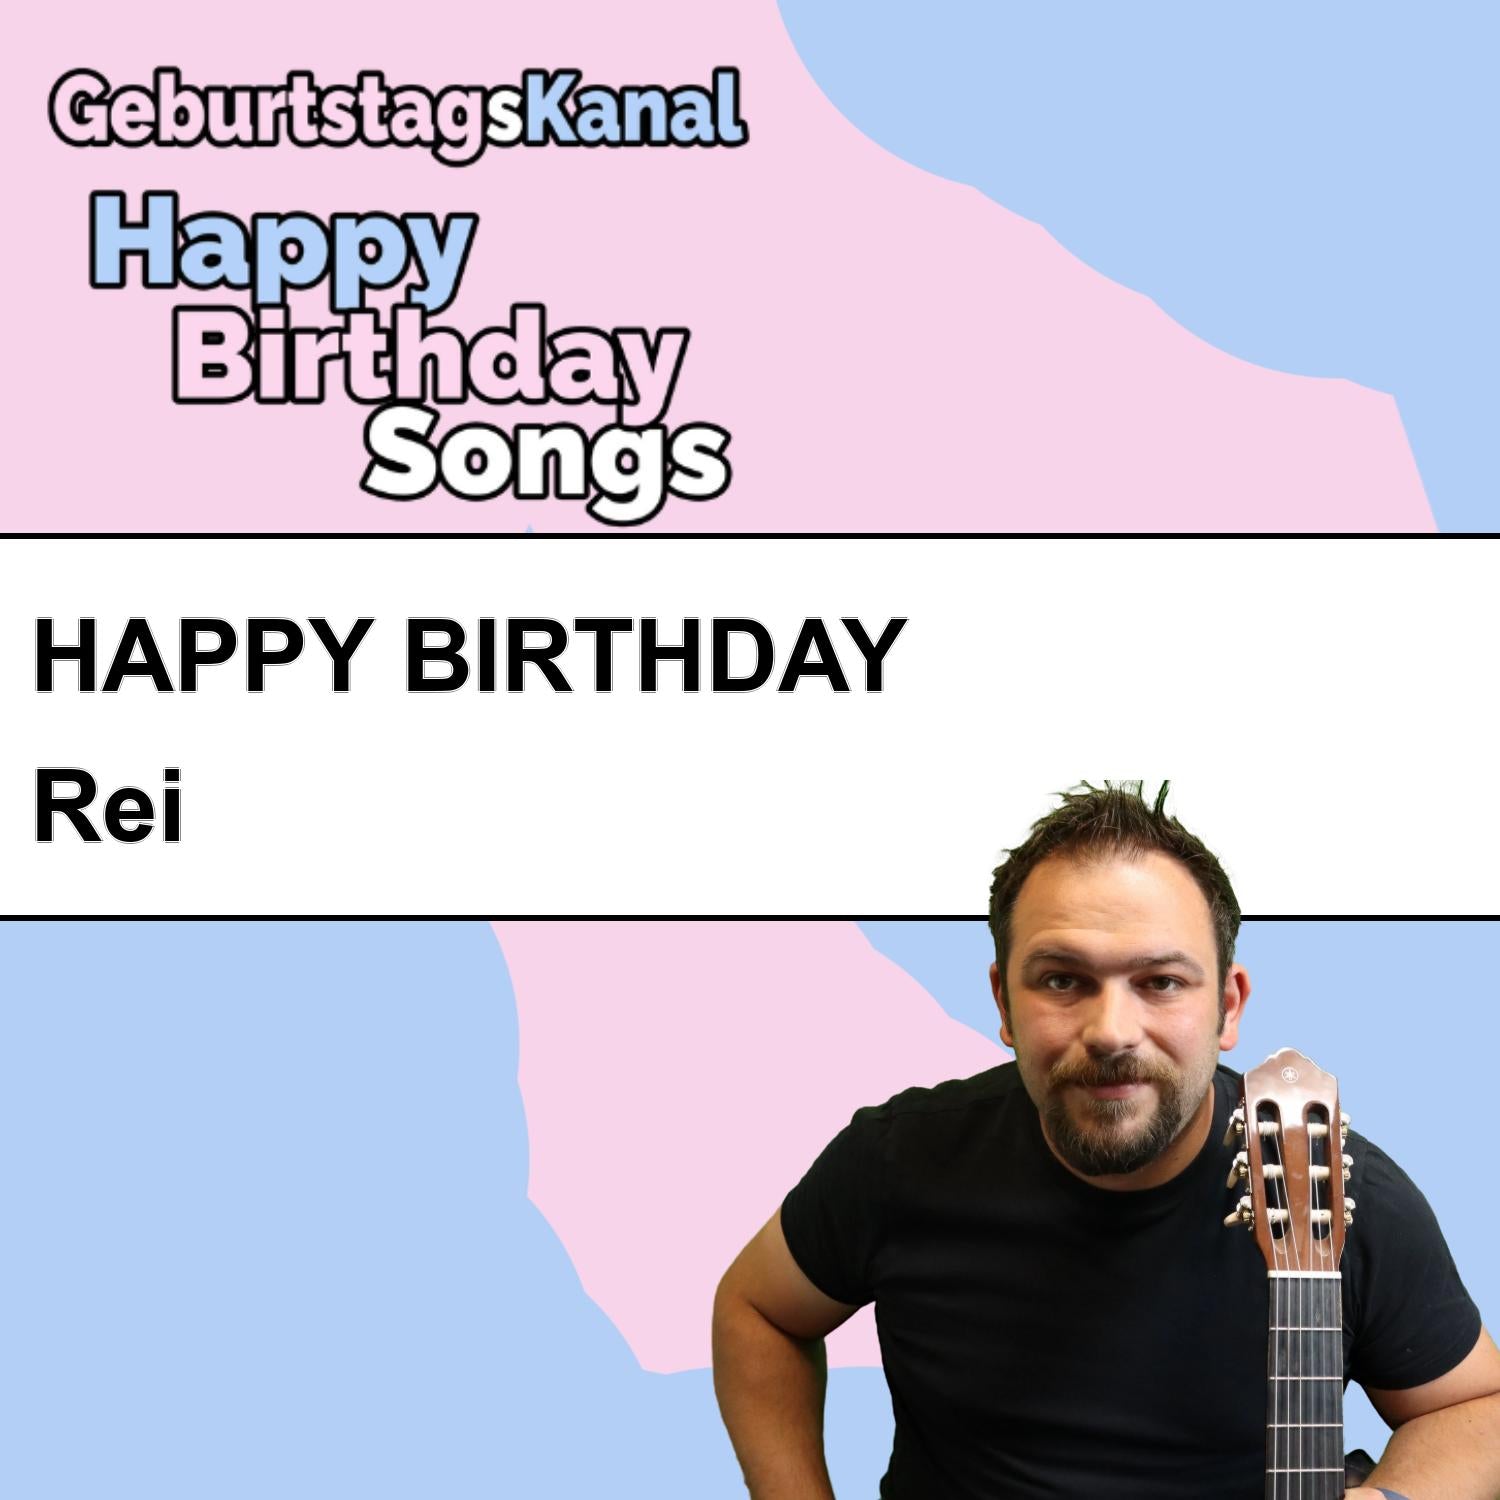 Produktbild Happy Birthday to you Rei mit Wunschgrußbotschaft